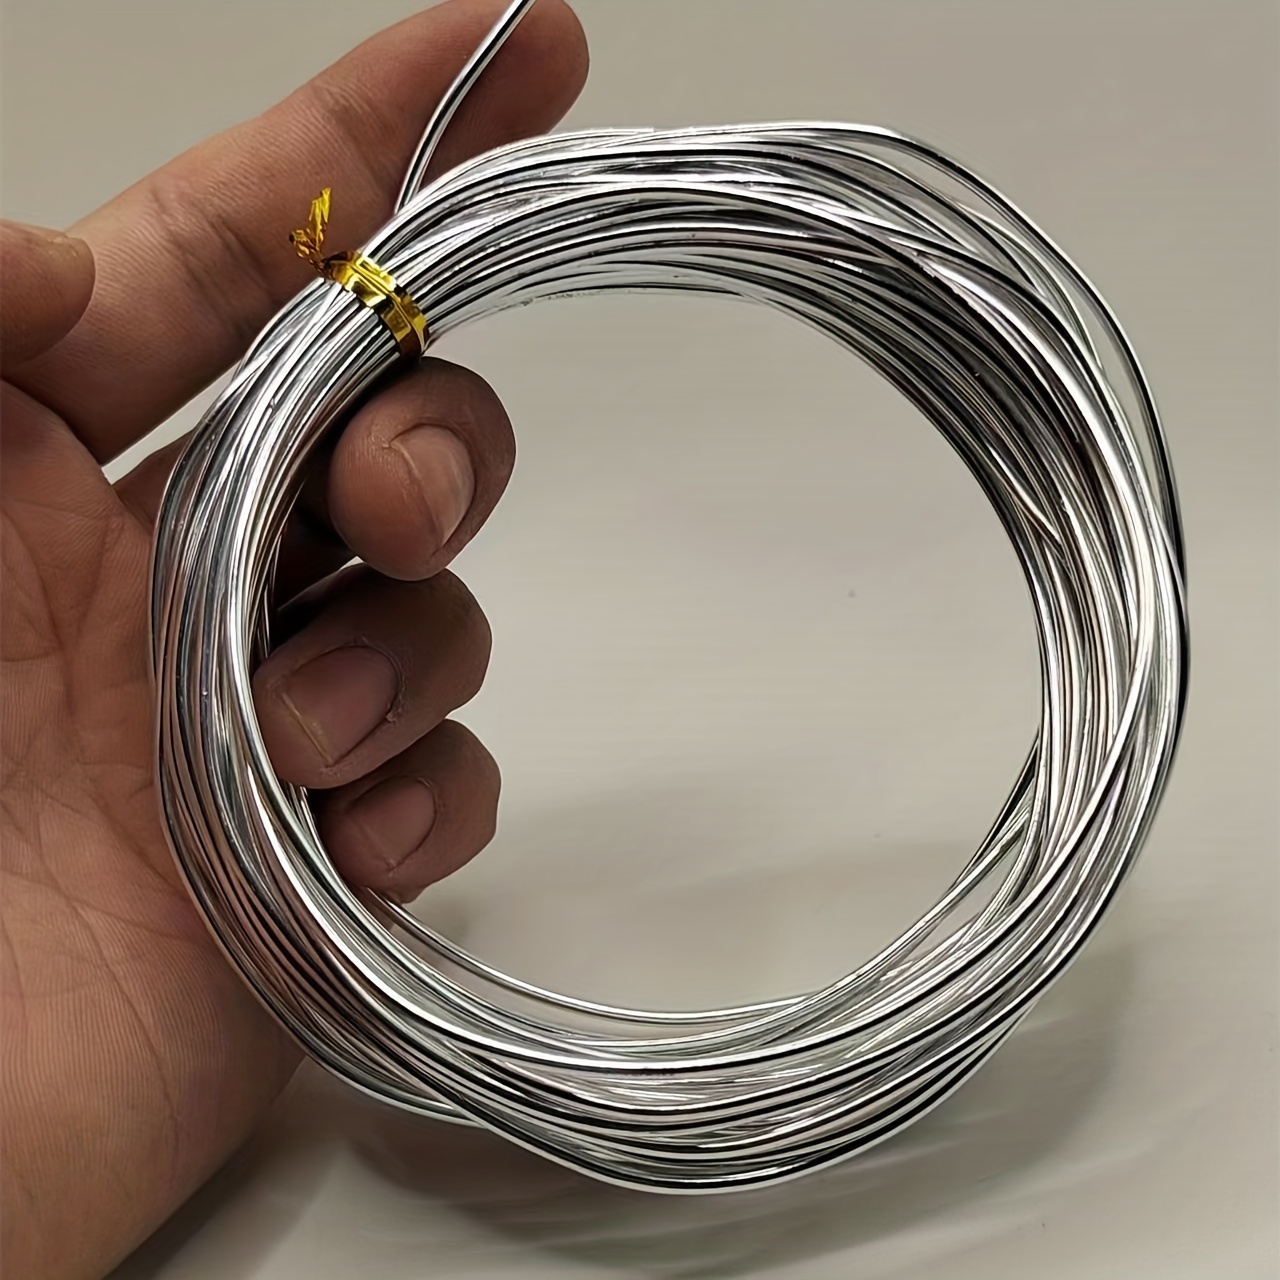 Artistic Wire Aluminum Craft Wire 12ga - Silver Tone